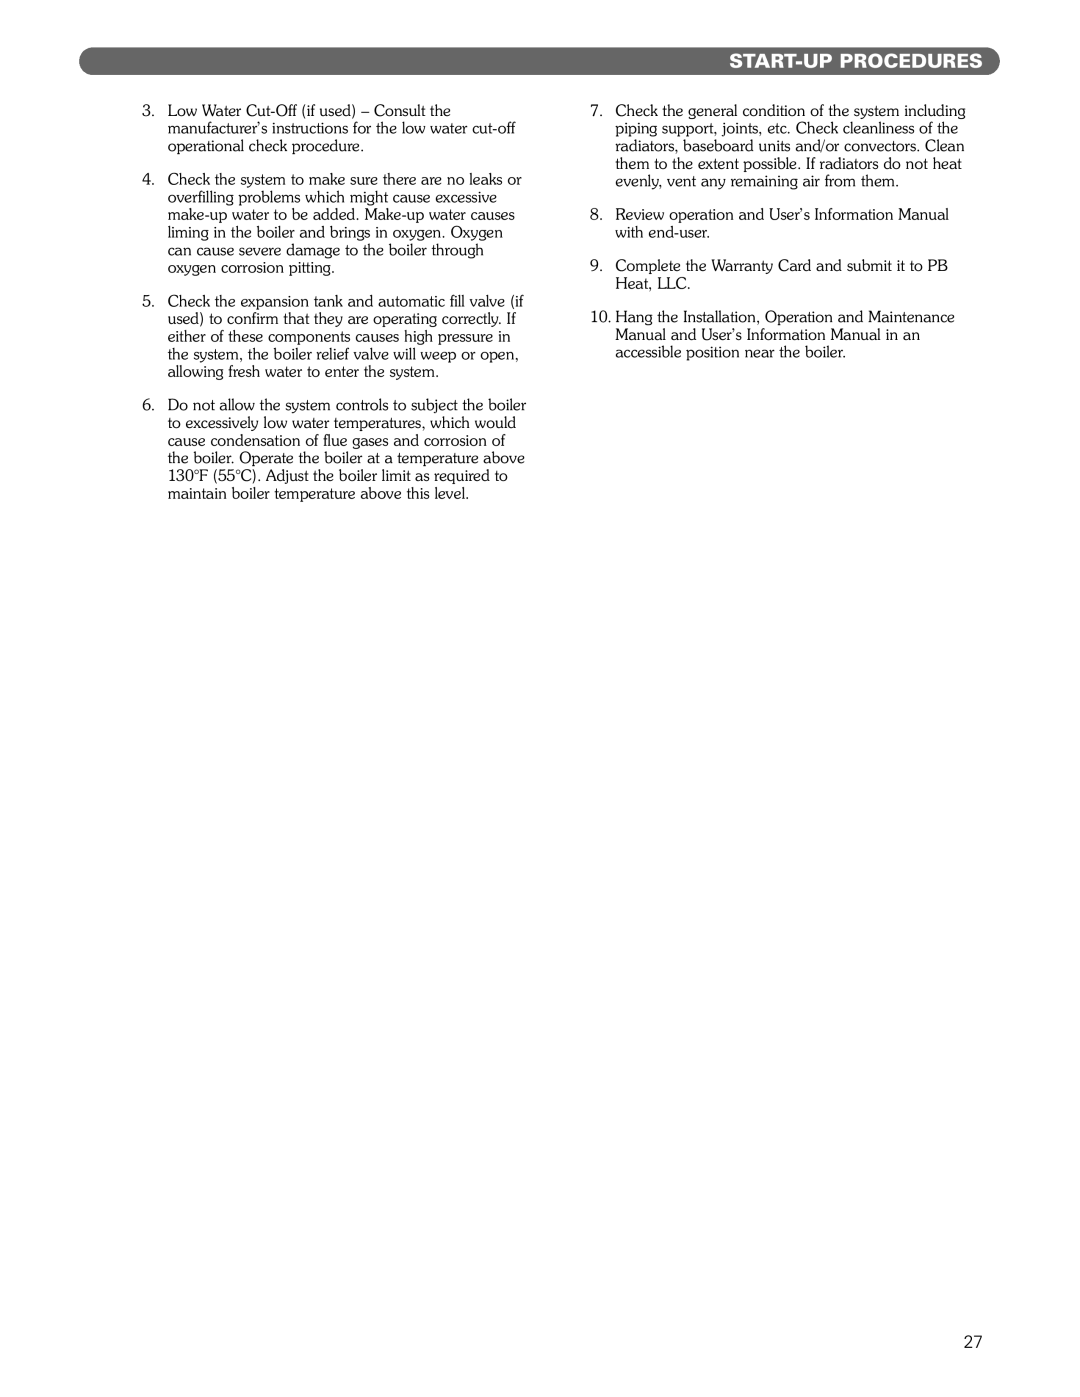 PB Heat DE manual Start-Upprocedures 